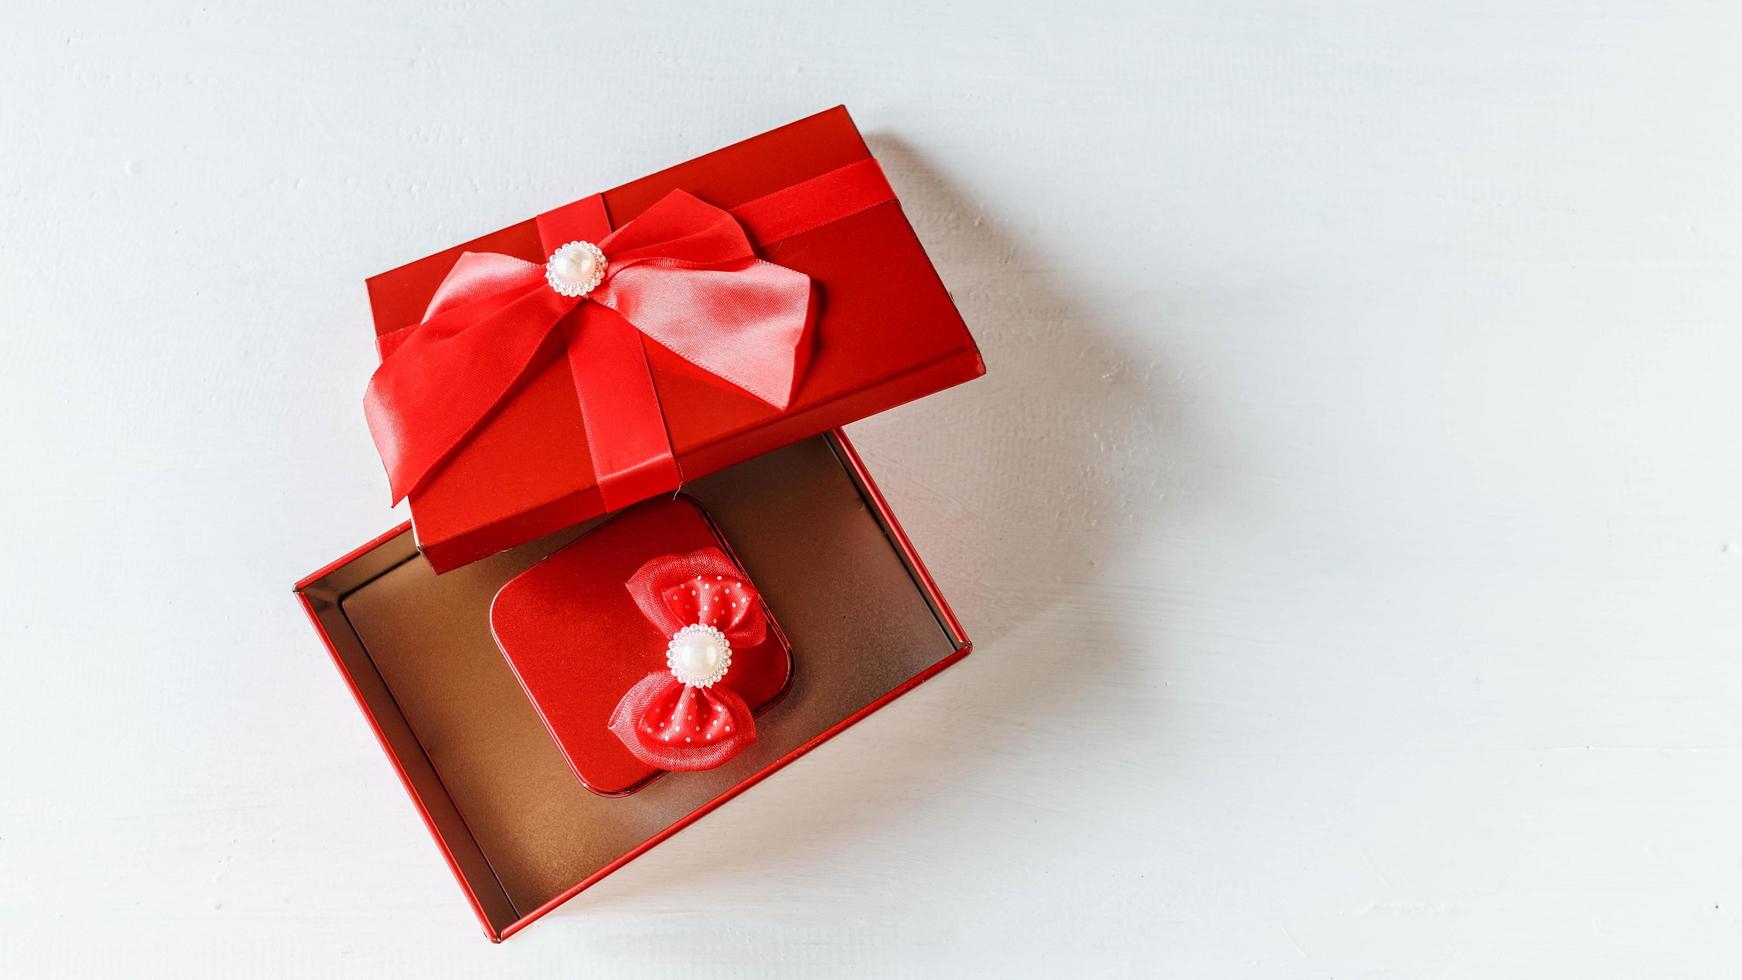 coffret cadeau rouge ouvert sur une table en bois blanc photo